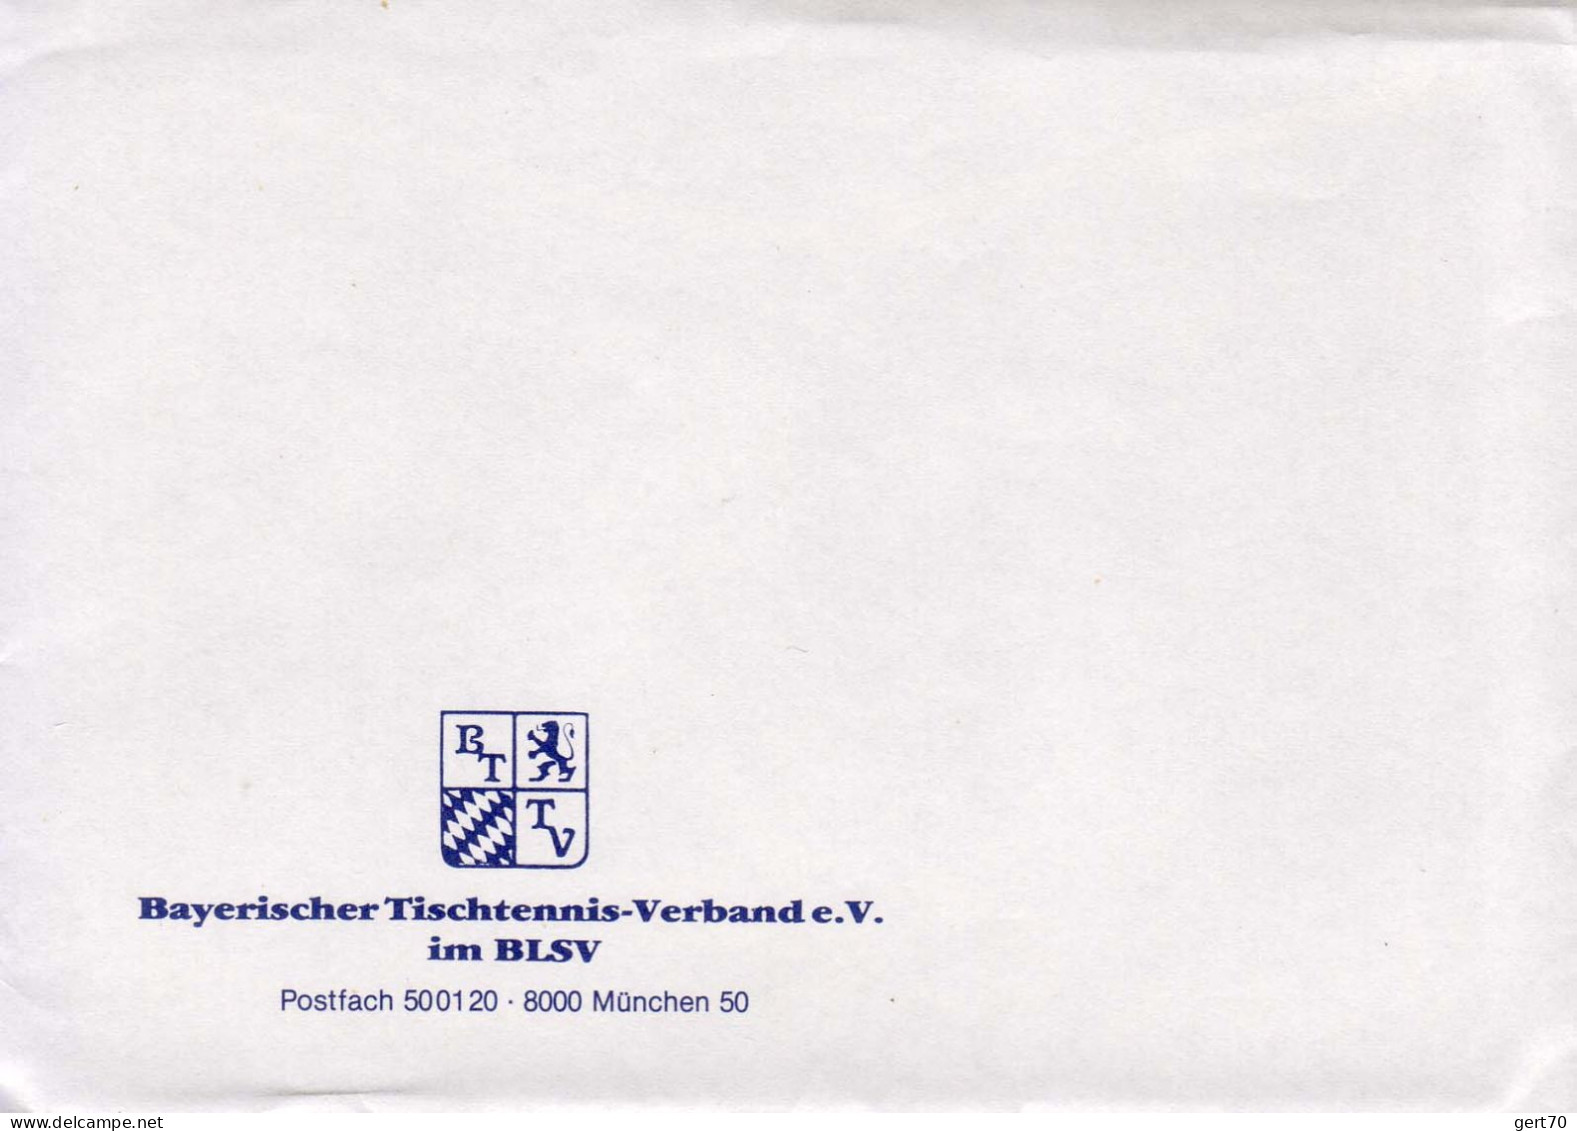 Germany / Allemagne, Mint Cover + Postcard / Enveloppe Vierge + Carte Postale / Bayerischer TTV - Tischtennis